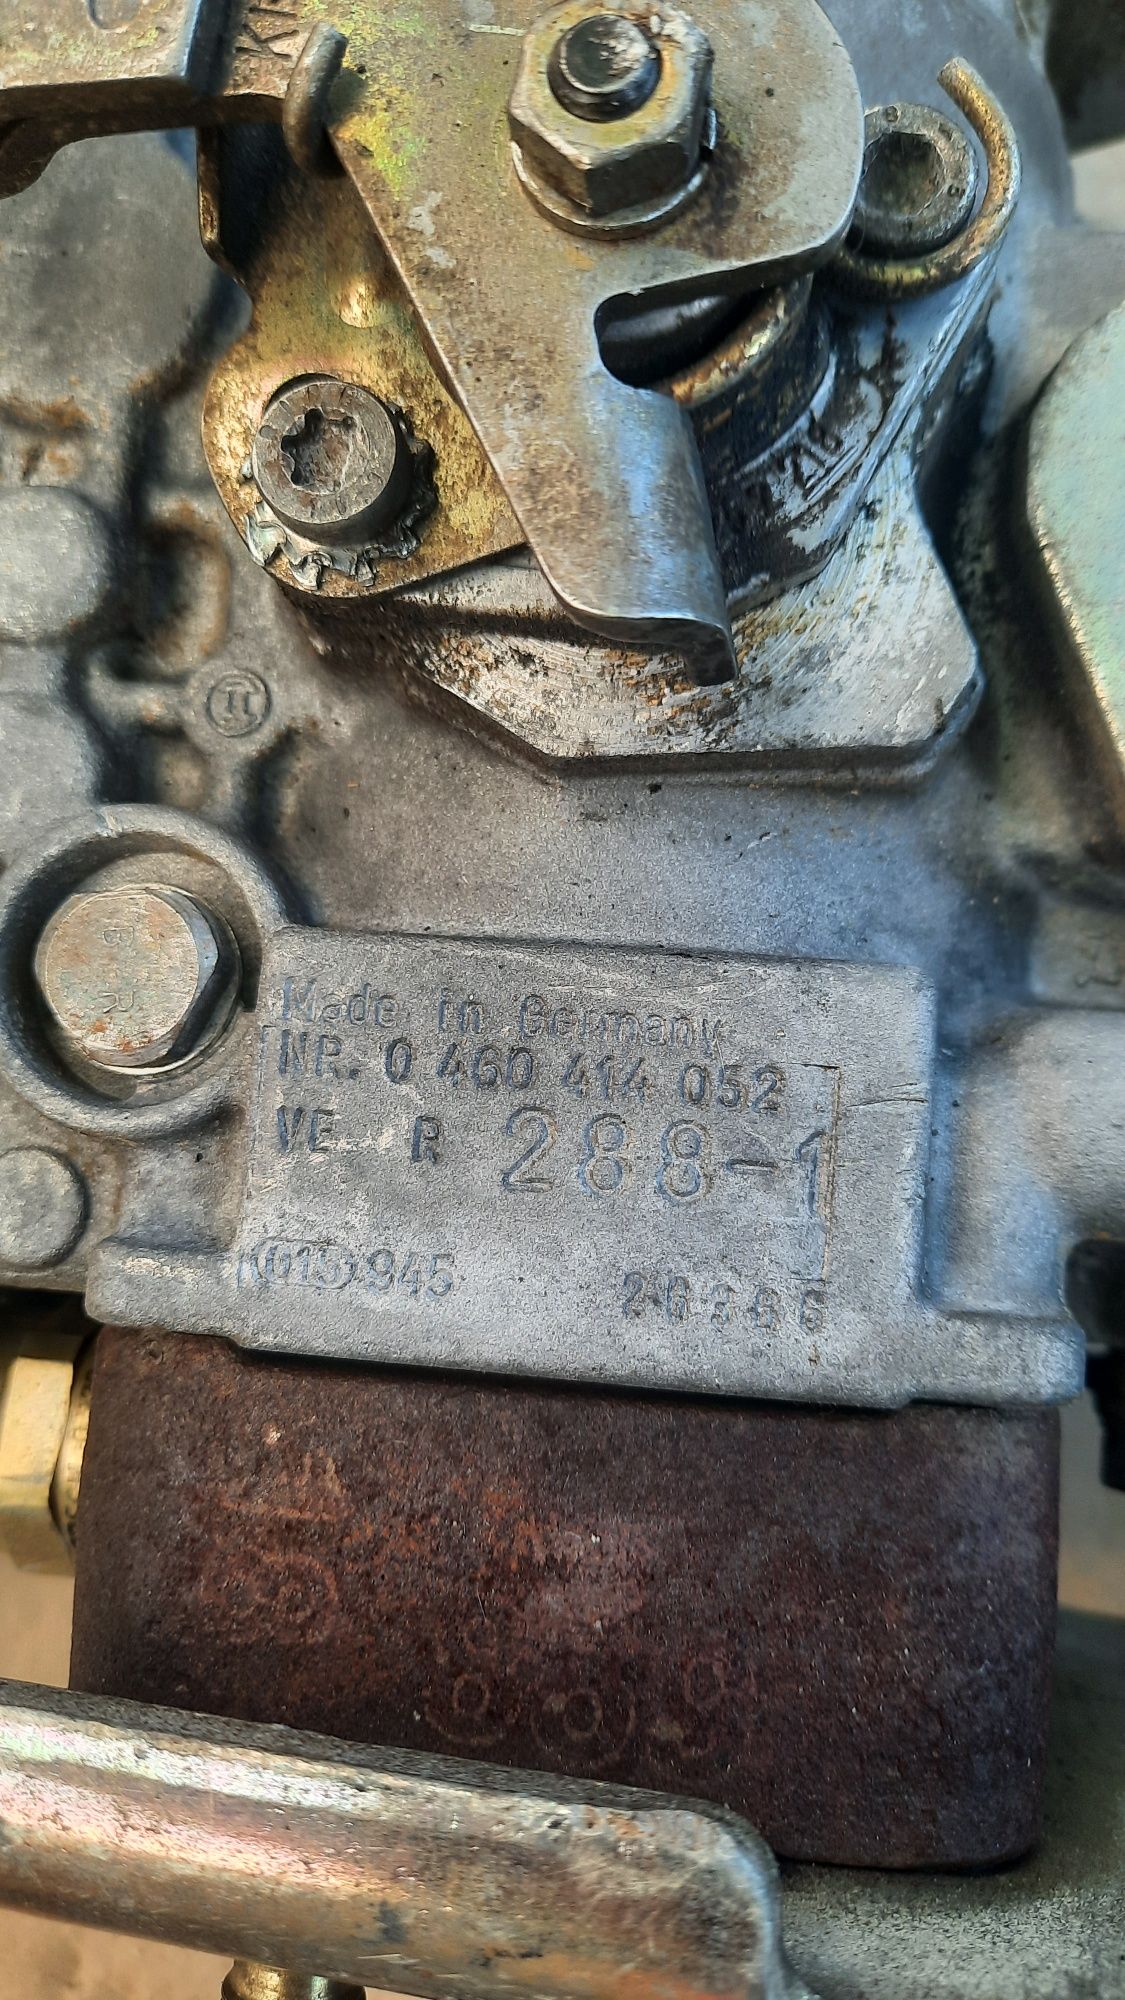 ТНВД топливный насос Ford Транзит 2.5 D 85- 00 г.в. 0 460 414 073.